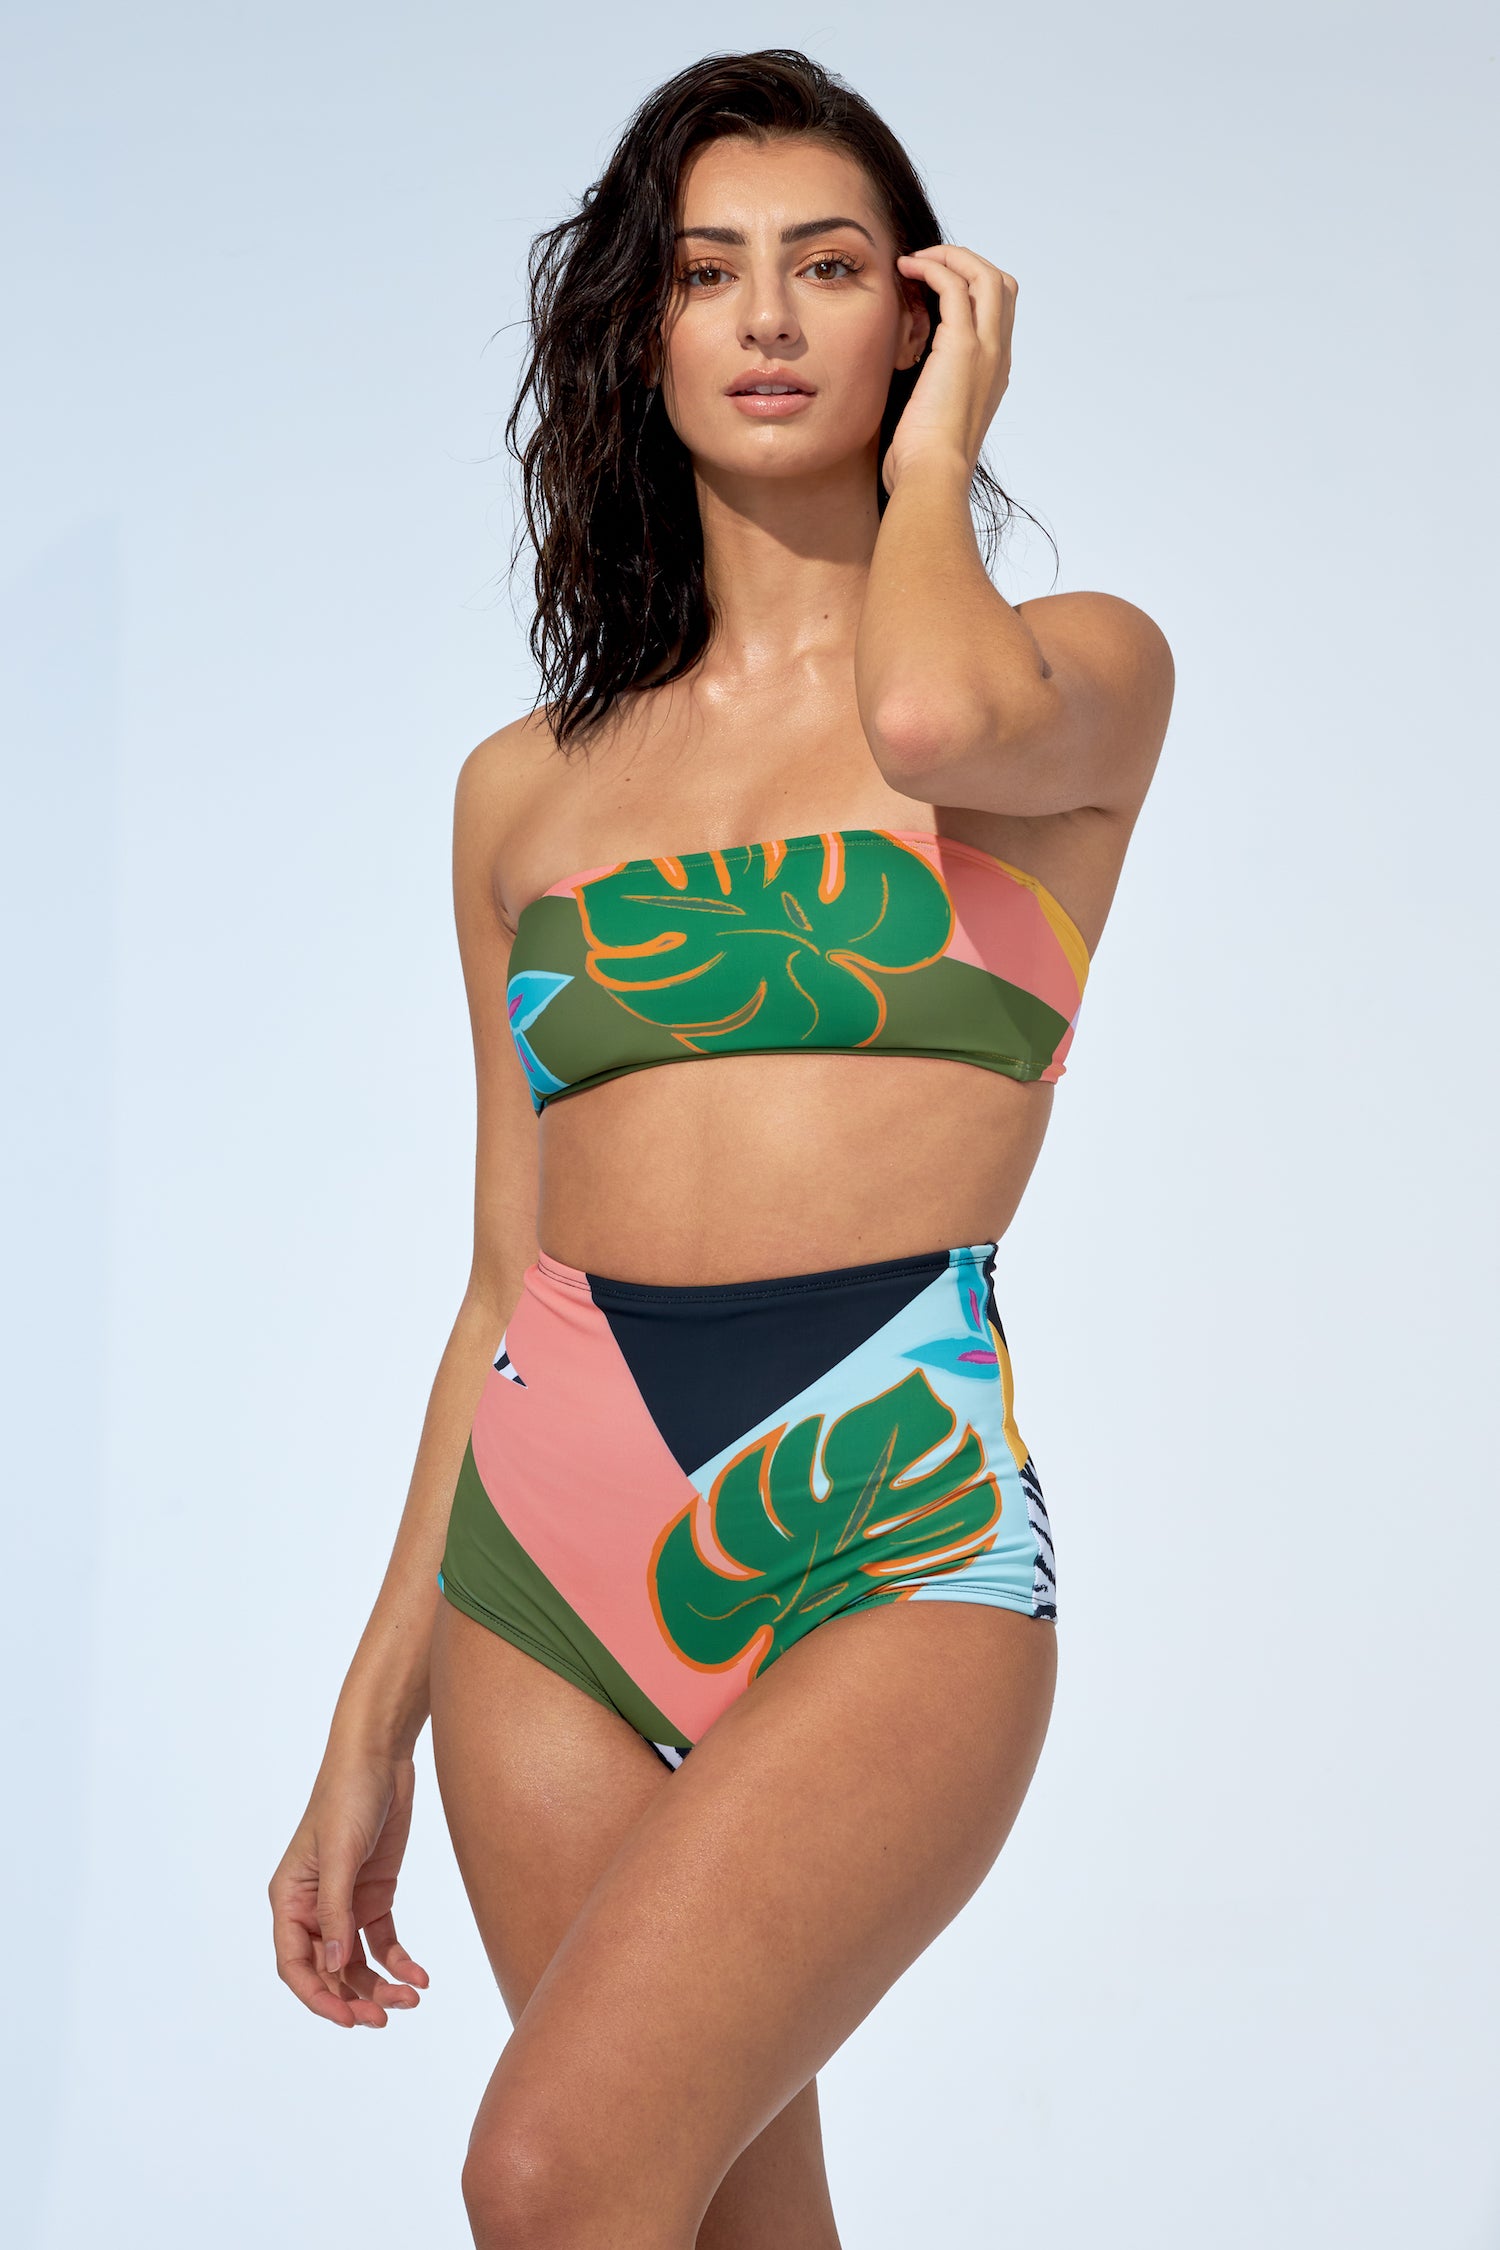 MARINA - Strapless bikini top in Tropical print - Selfish swimwear Top